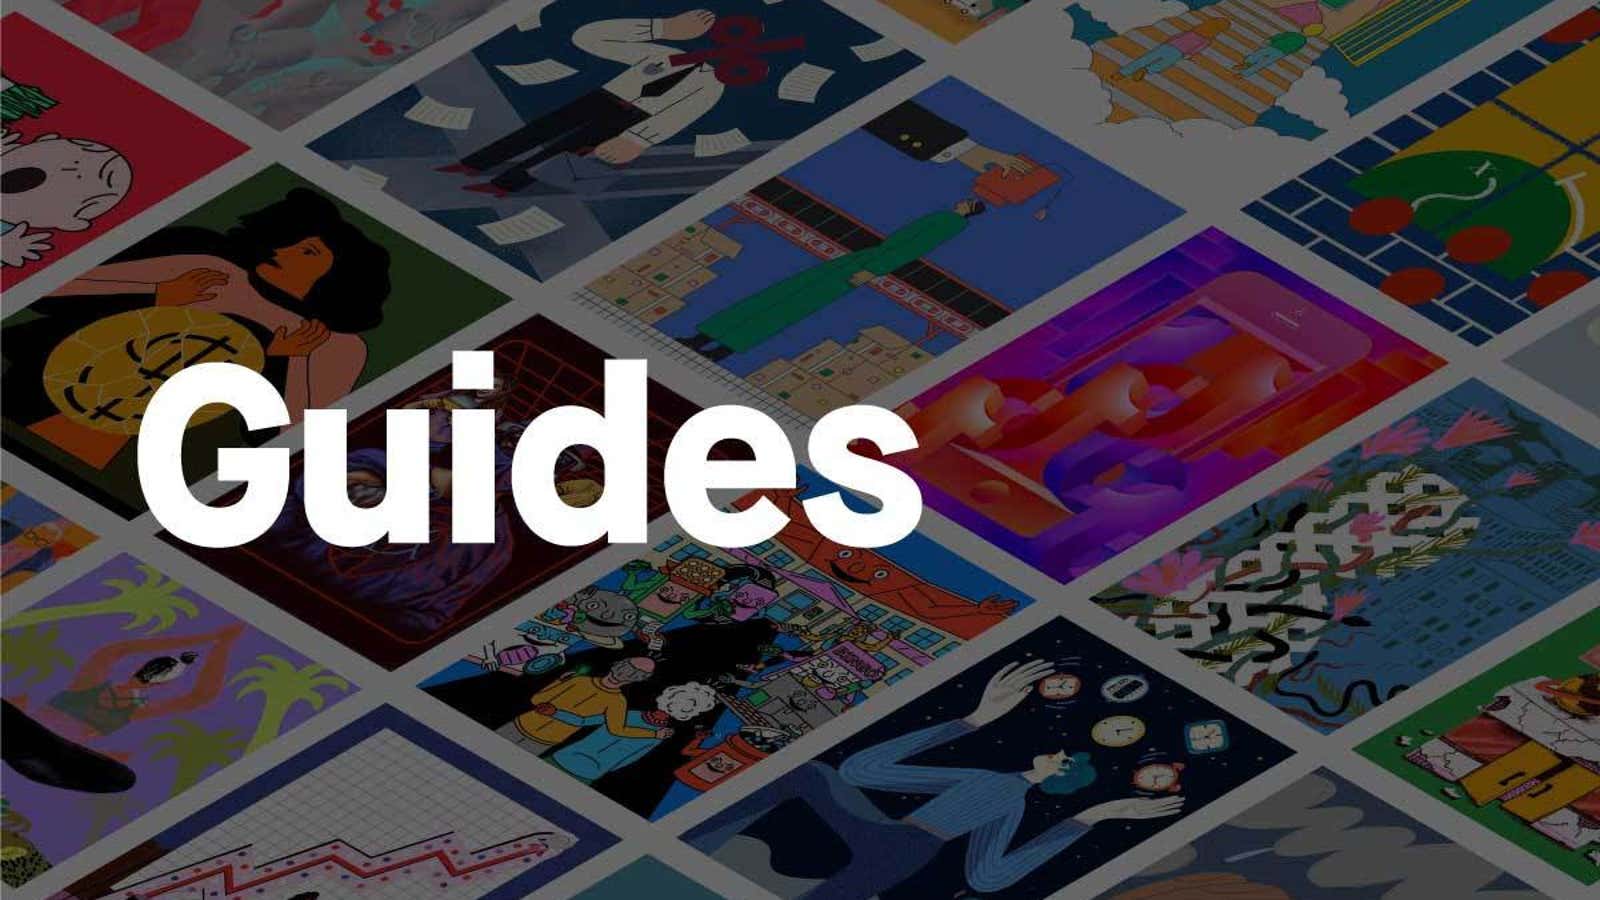 Quartzの連載「Guidesのガイド」の価値：ニュースだけでは、世界はわからない